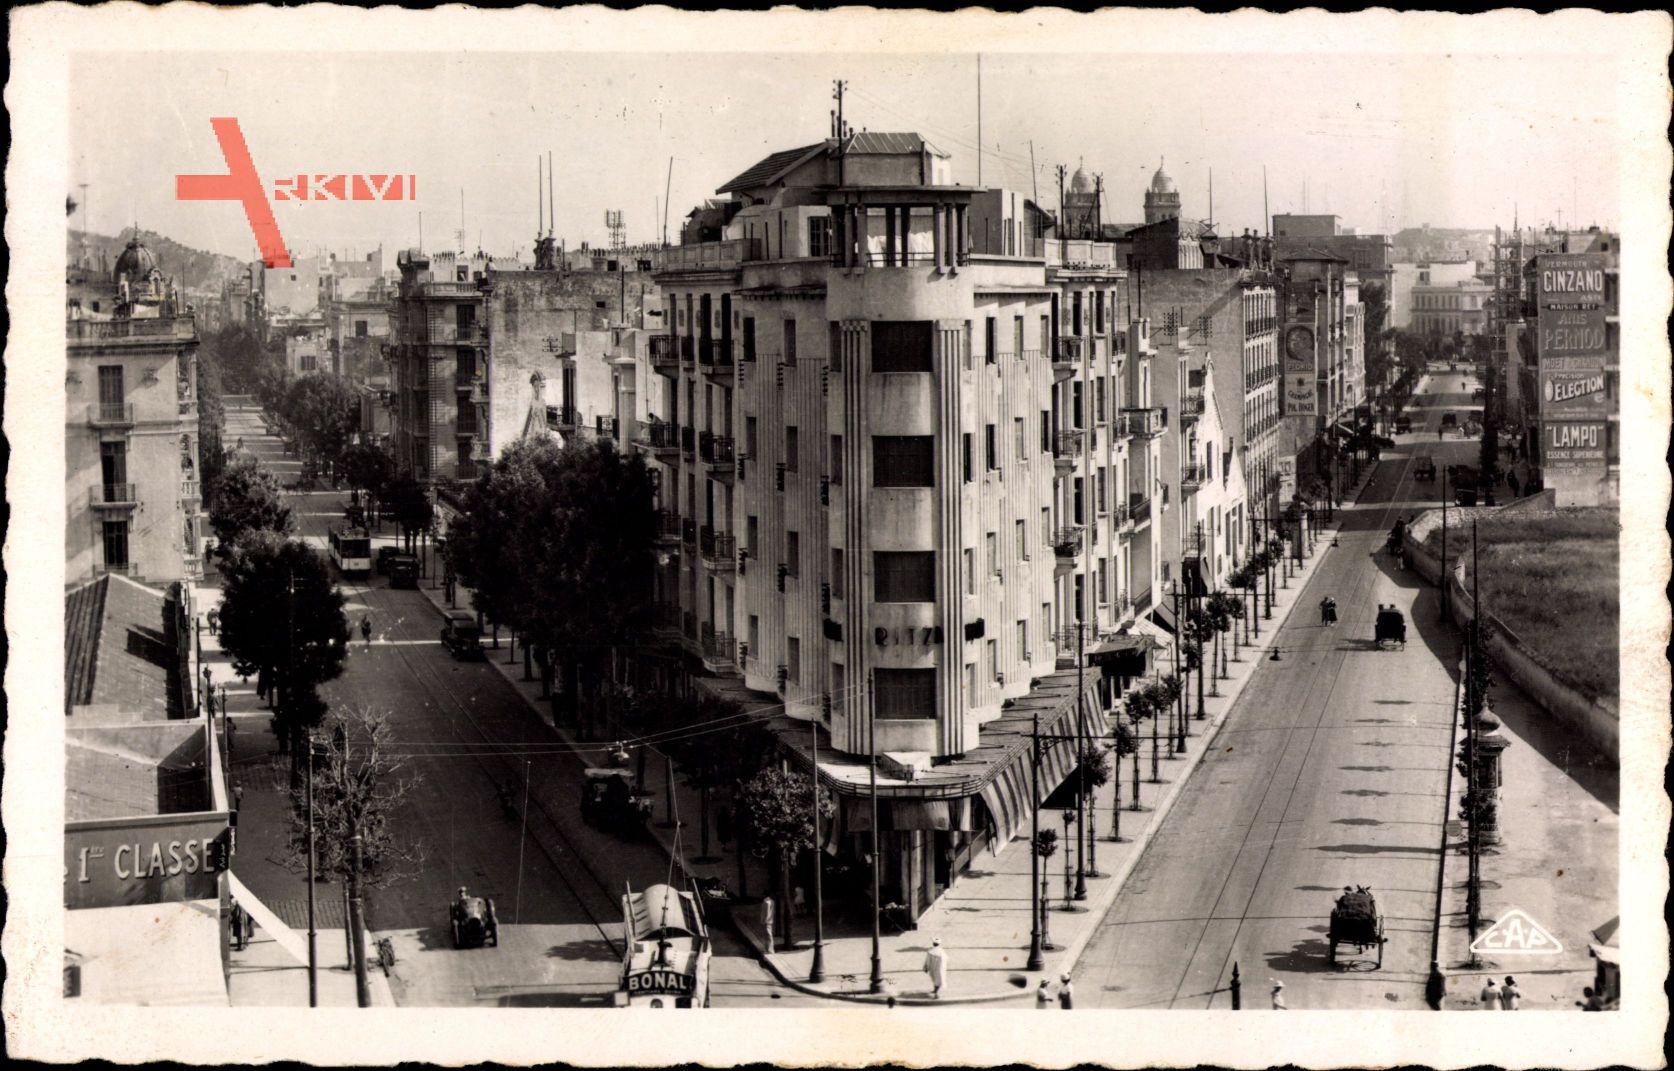 Tunis Tunesien, Place Anatole France, Avenue de Paris, Avenue Théodore Ro.